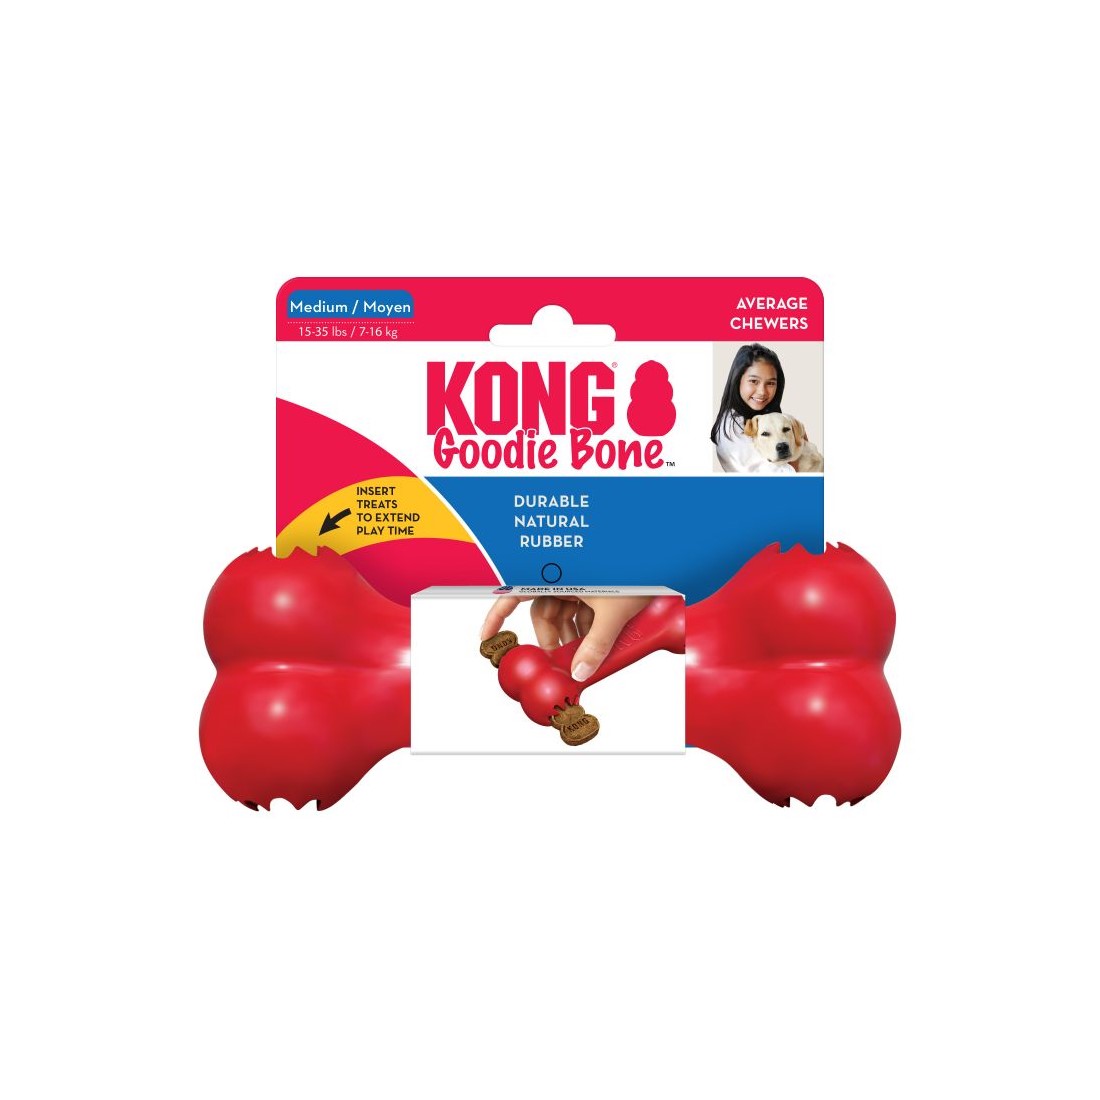 Kong Goodie Bone – Medium